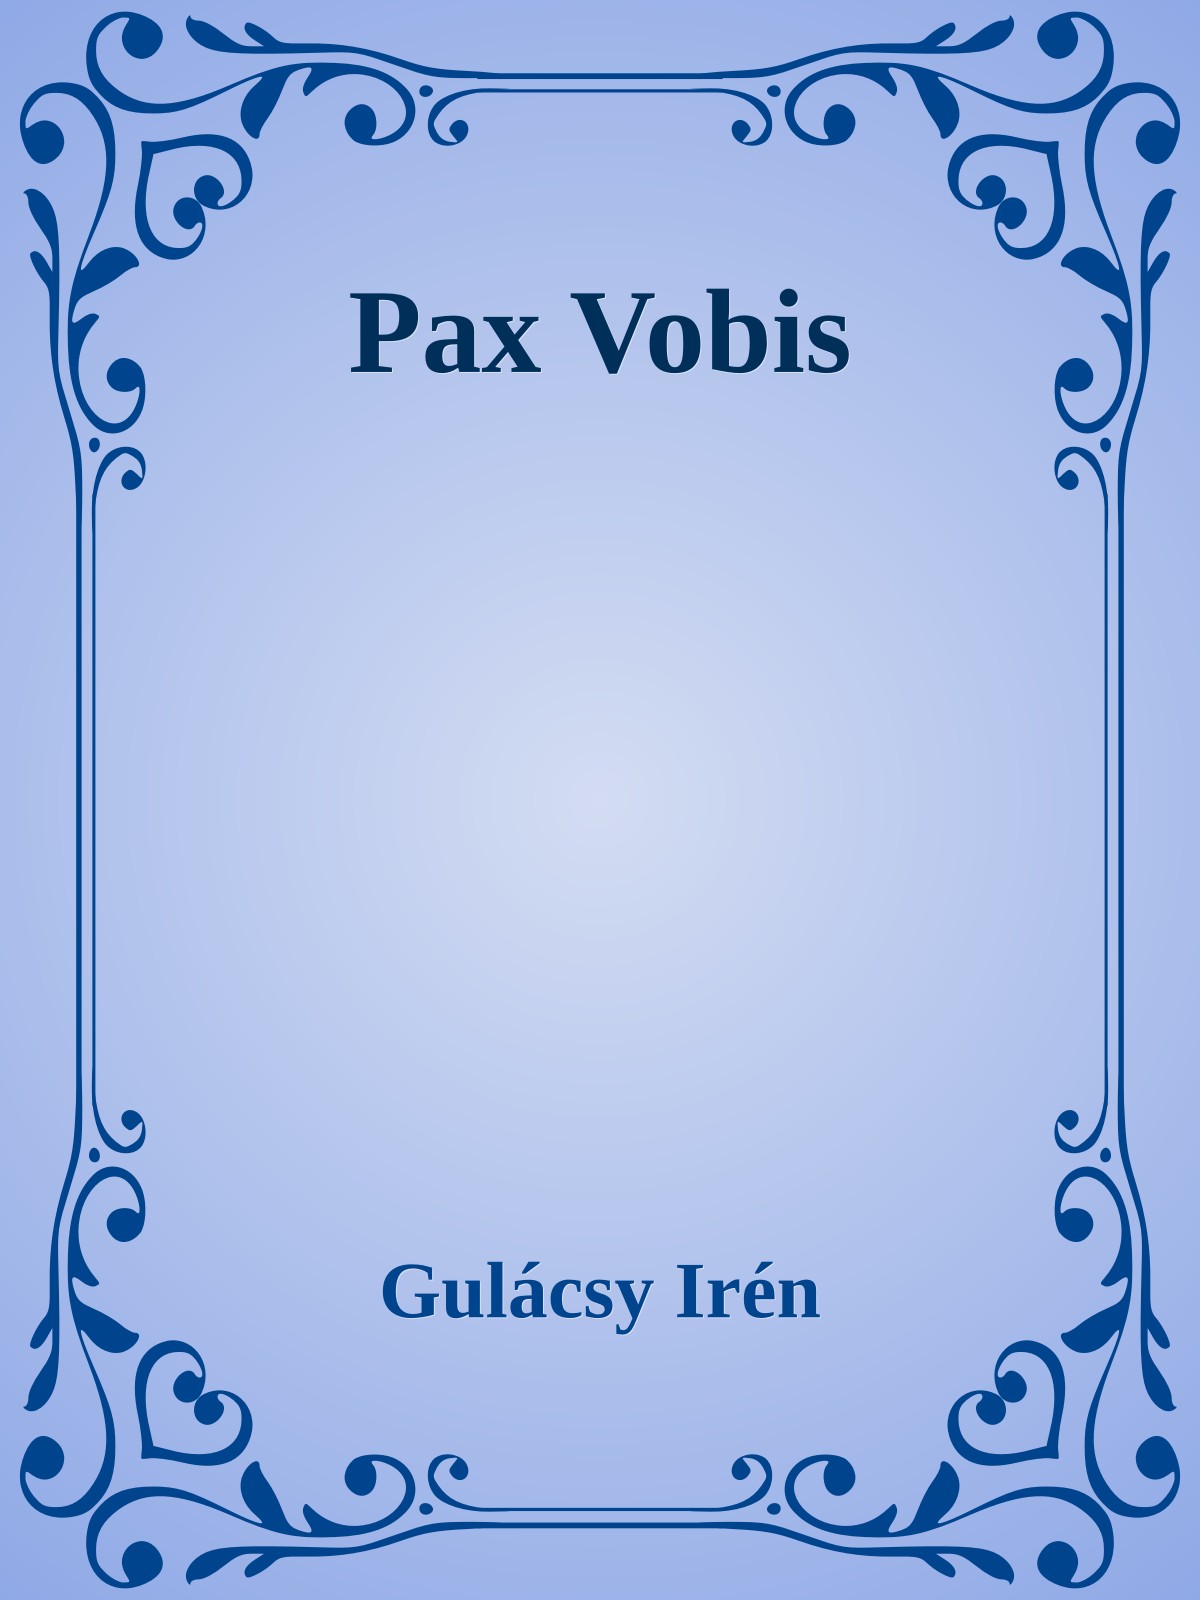 Pax vobis